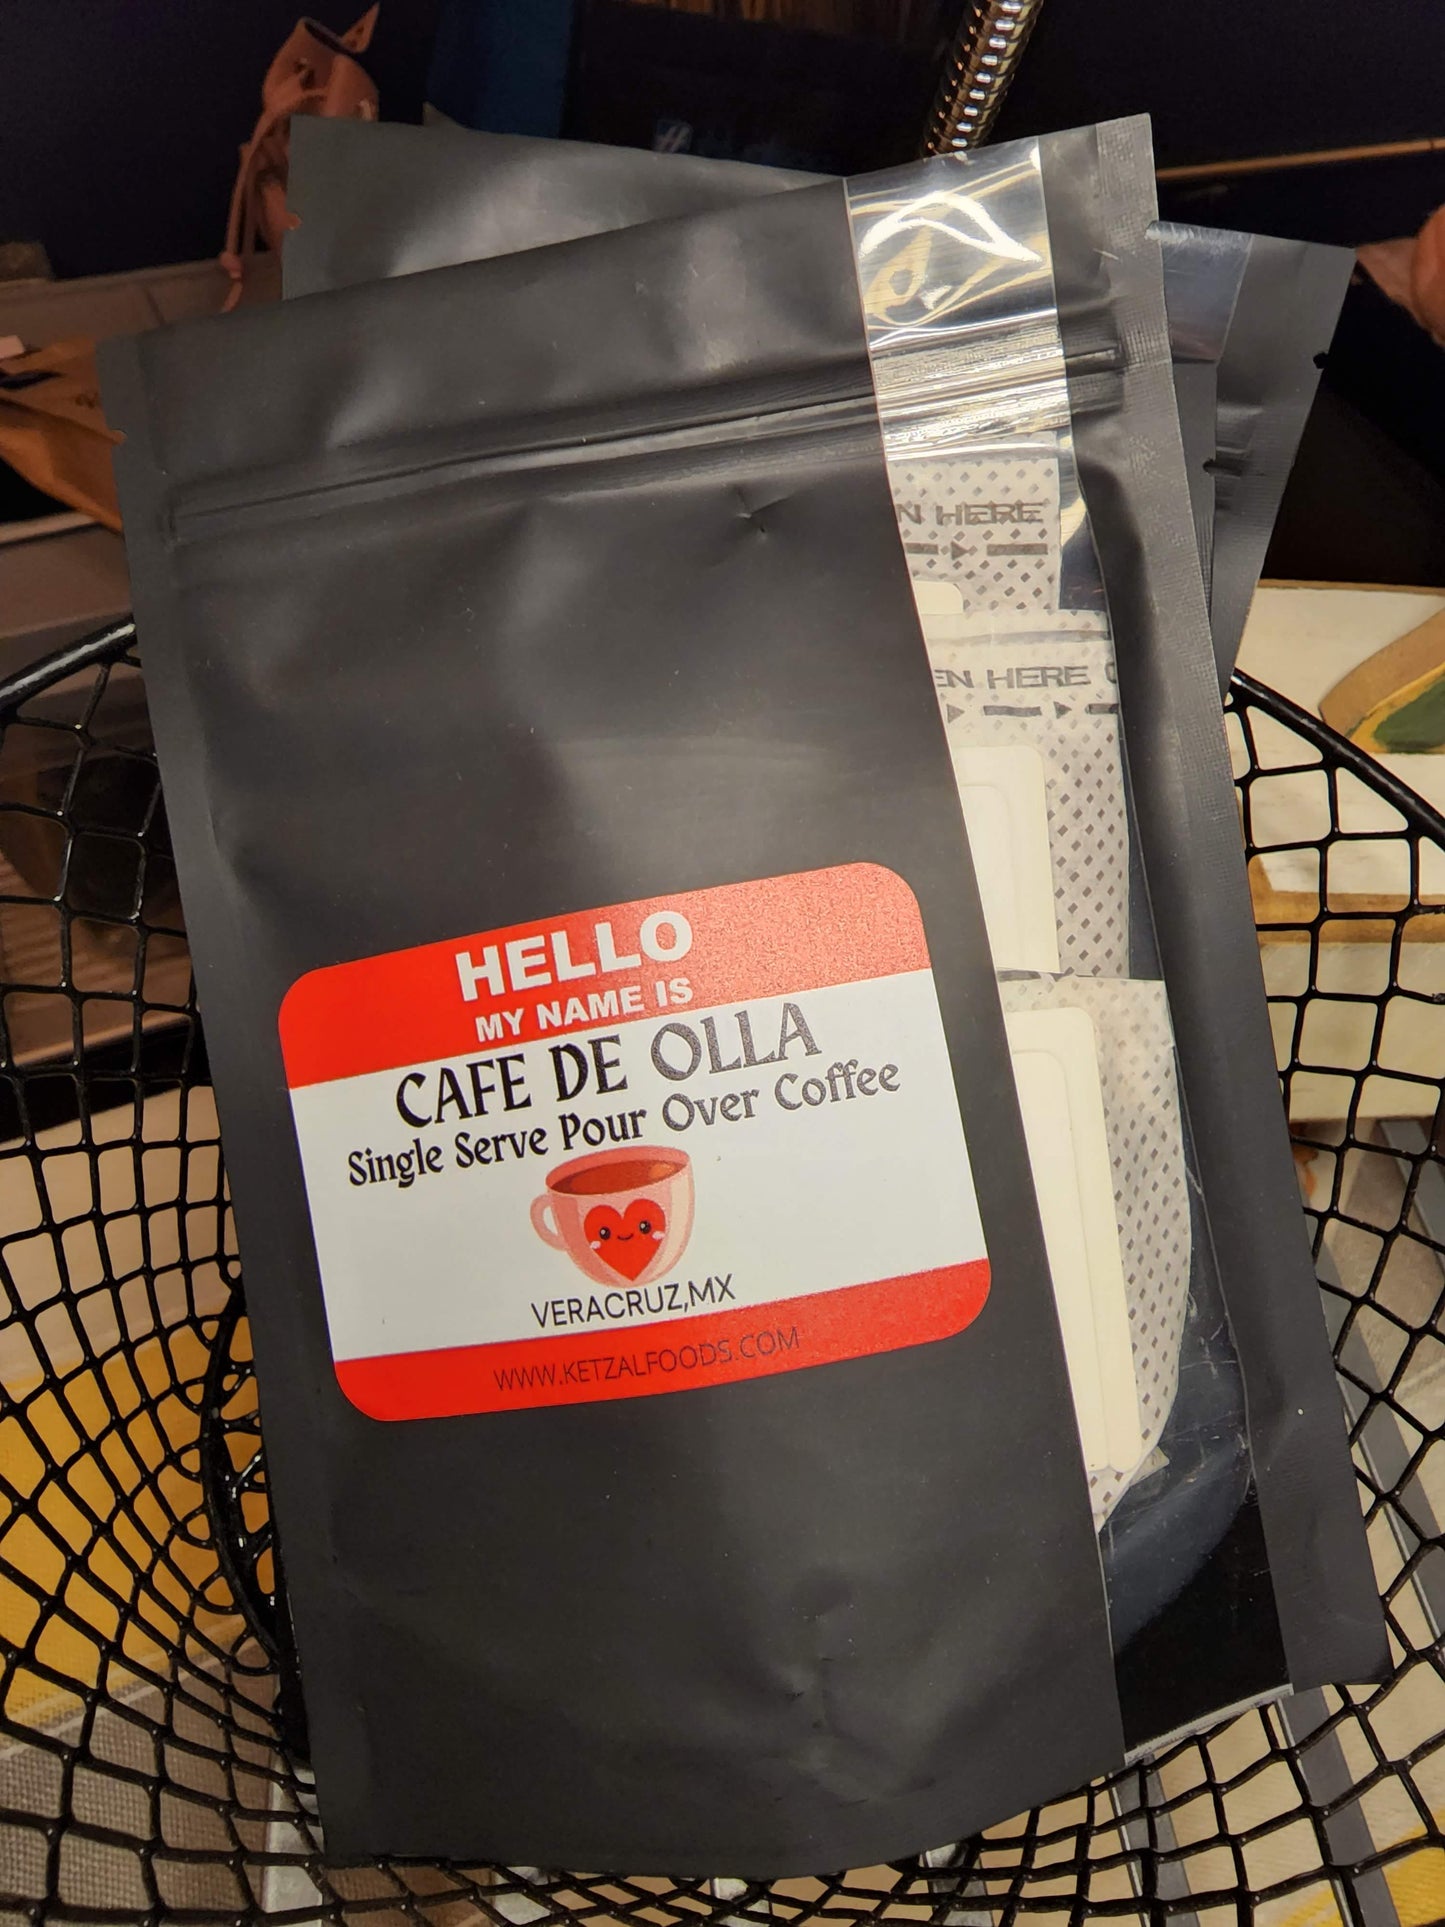 Cafe de Olla - Single Serve Pour Over Coffee